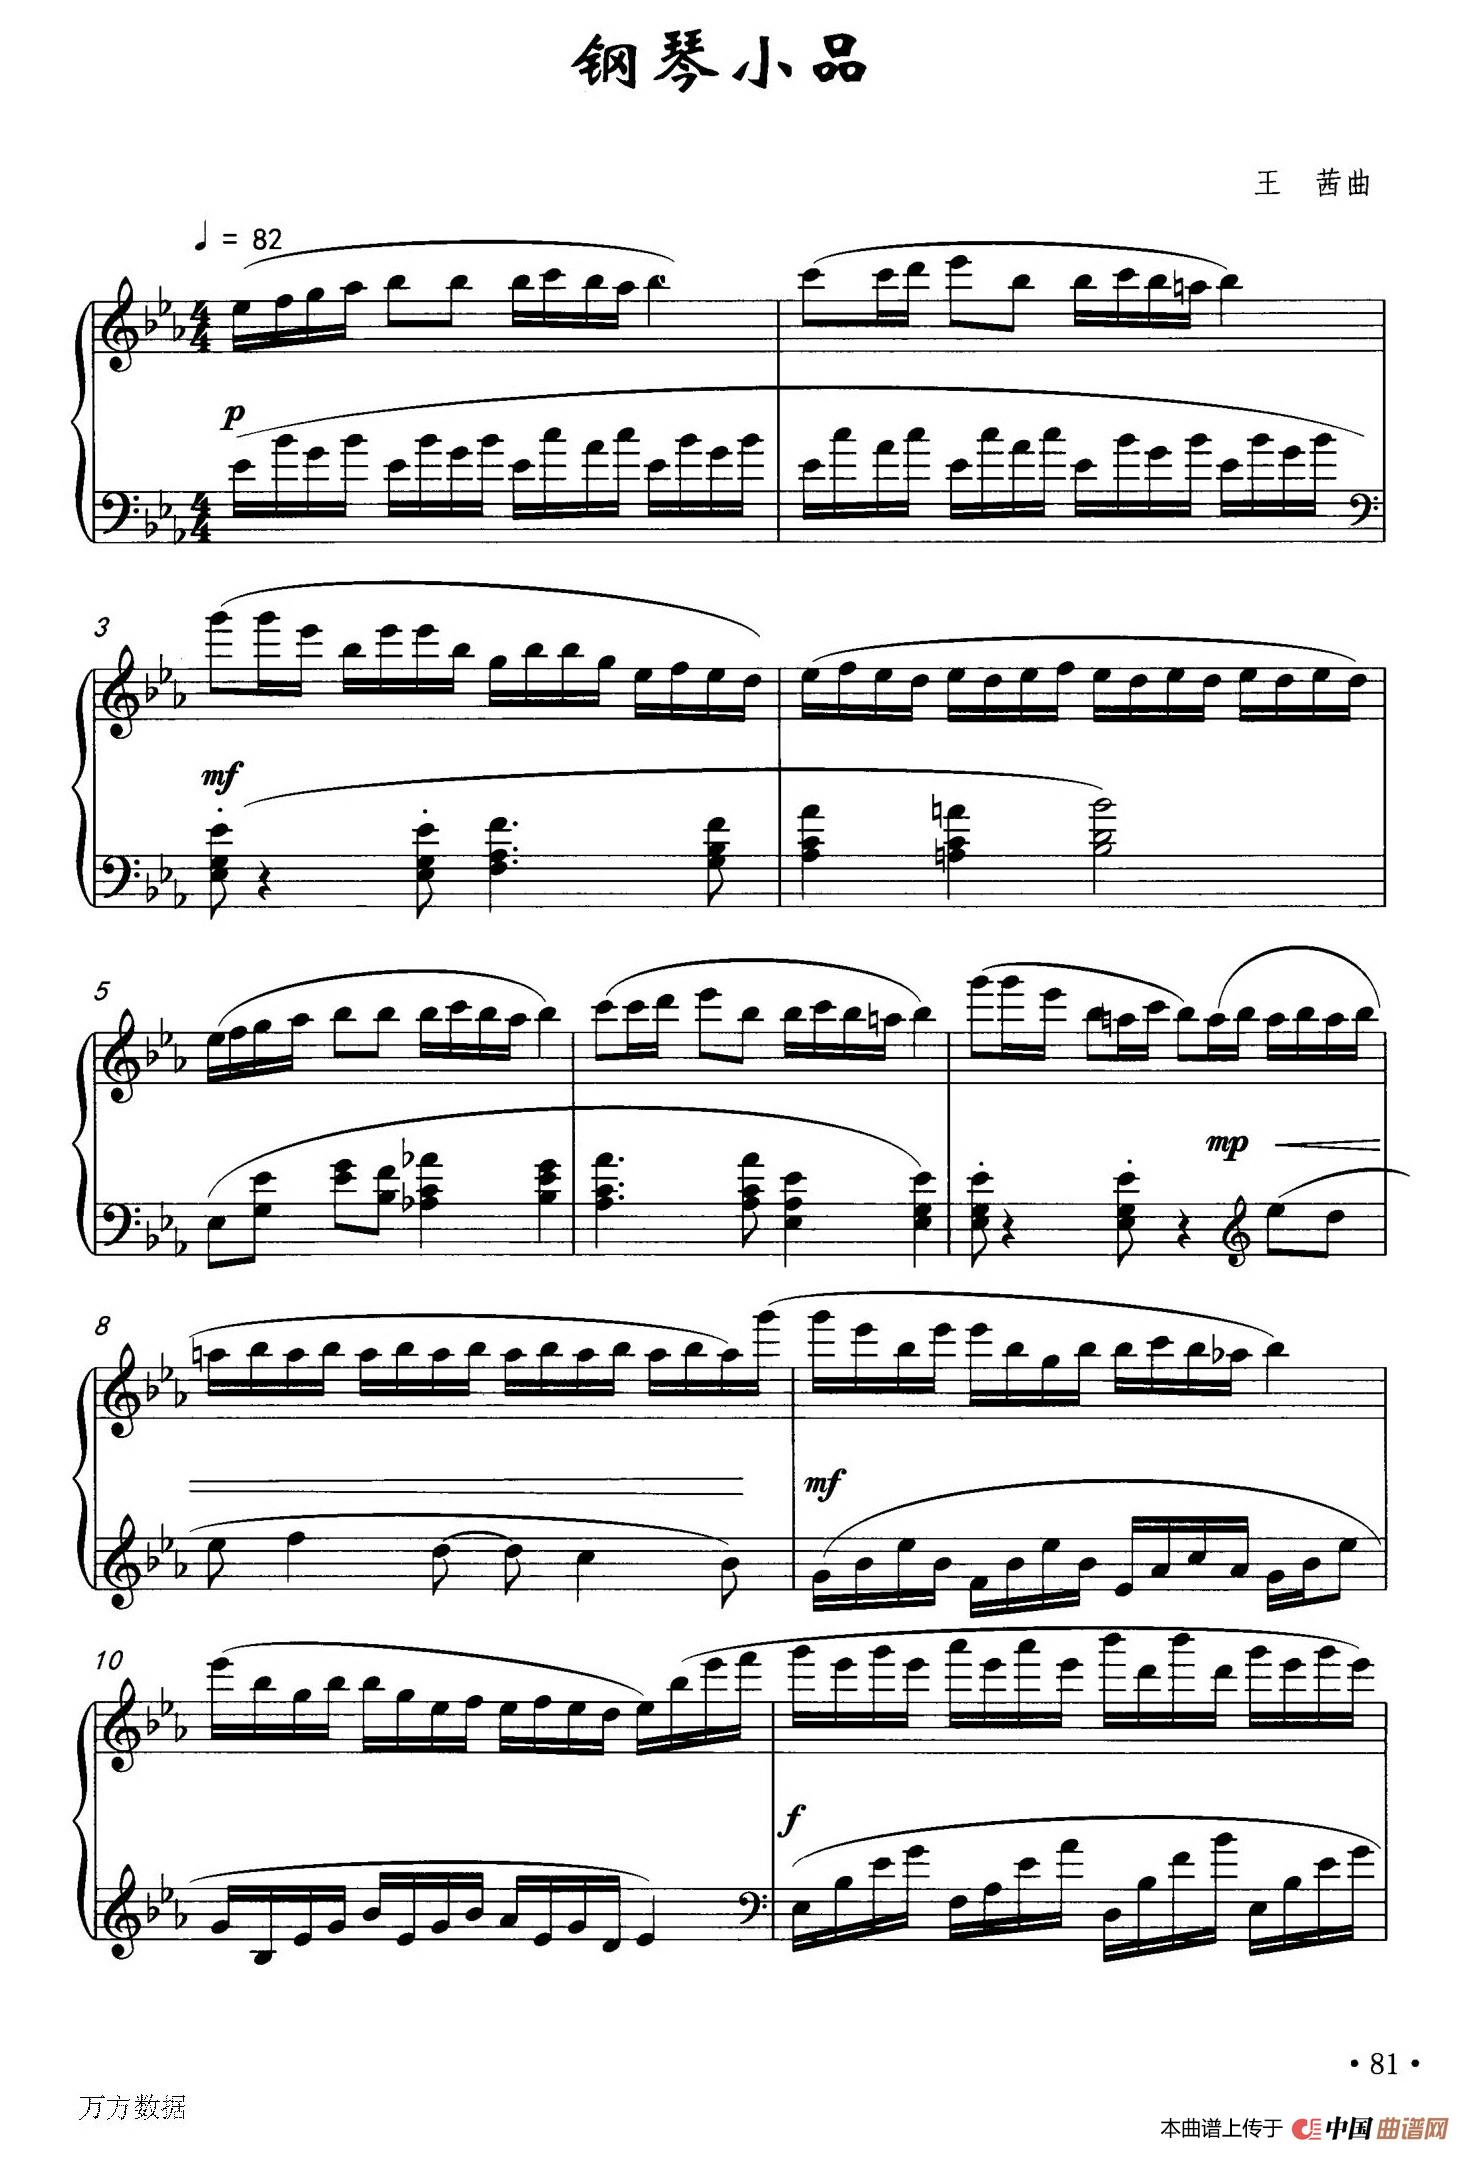 《钢琴小品》钢琴曲谱图分享